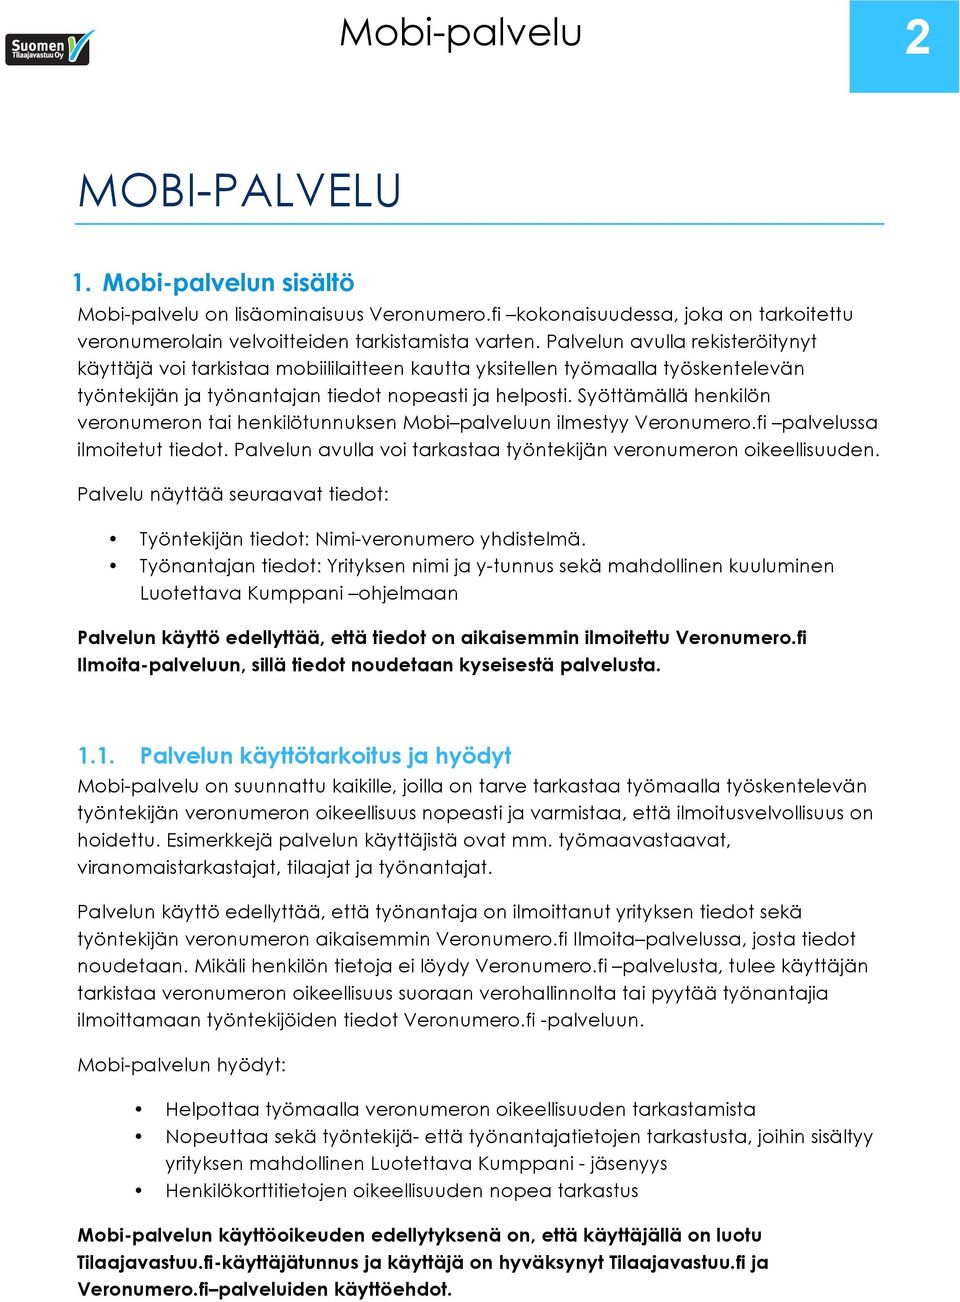 Syöttämällä henkilön veronumeron tai henkilötunnuksen Mobi palveluun ilmestyy Veronumero.fi palvelussa ilmoitetut tiedot. Palvelun avulla voi tarkastaa työntekijän veronumeron oikeellisuuden.